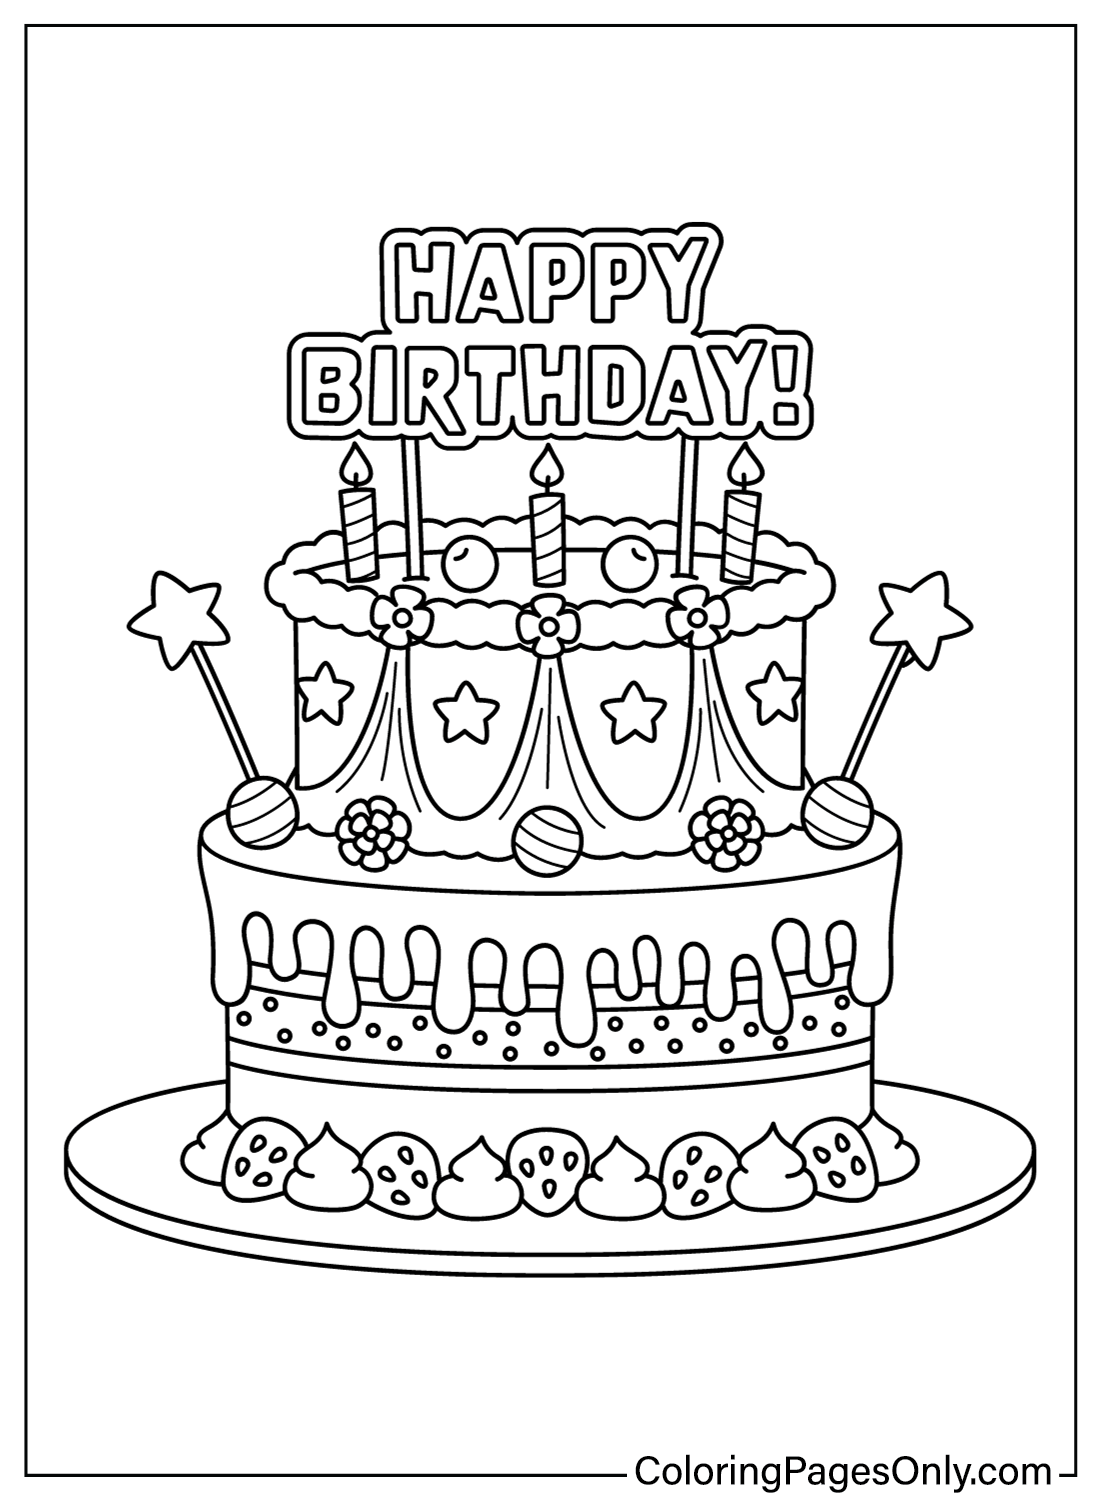 Disegni da colorare gratuiti per torte di compleanno